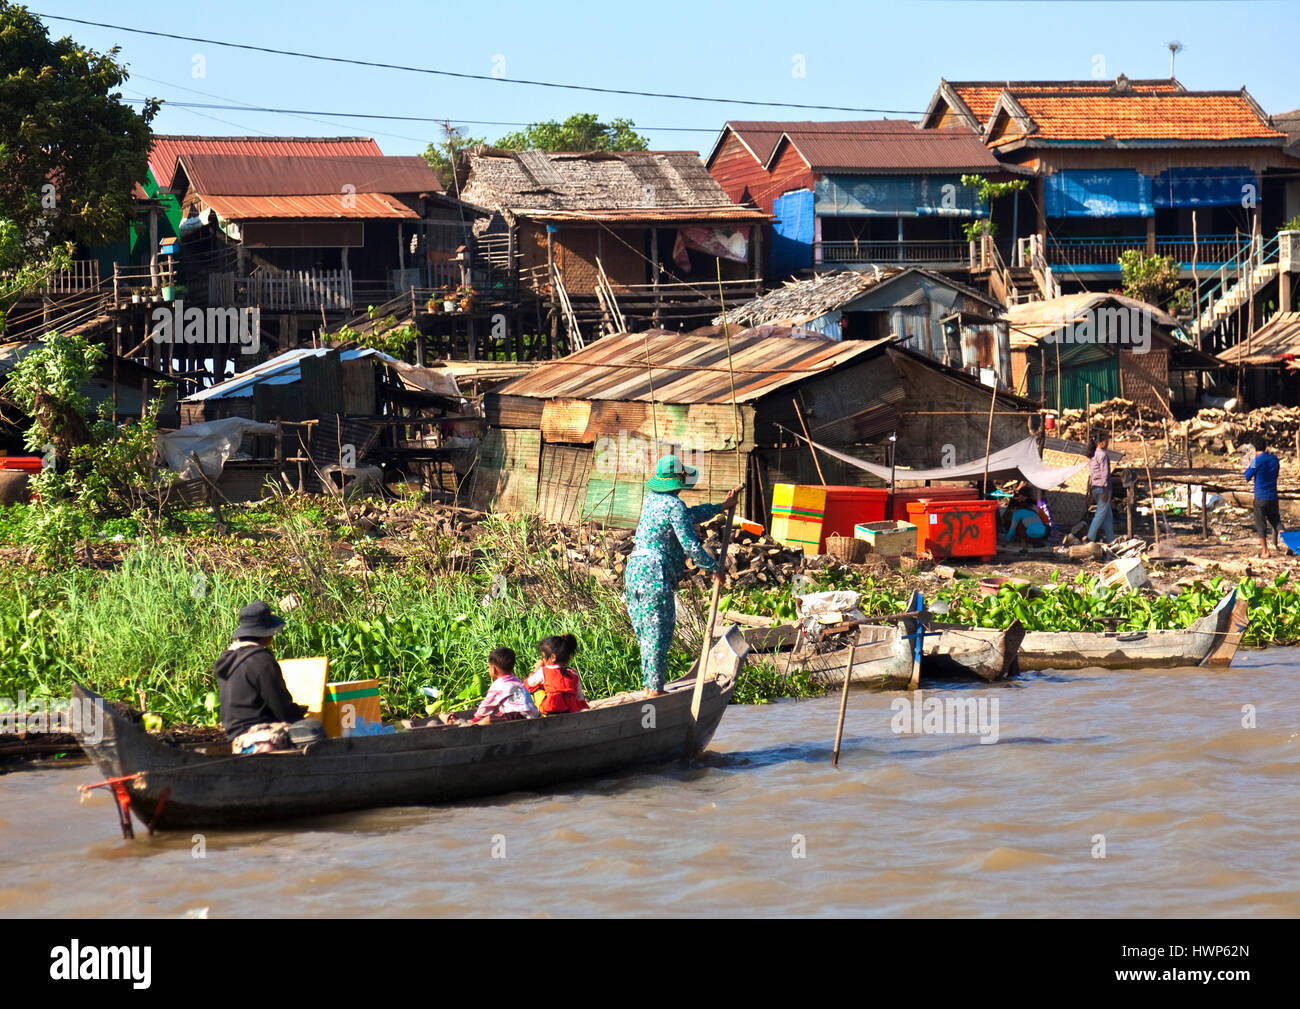 Cambodian family on way by boat to shopping at Kampong Chhnang Stock Photo